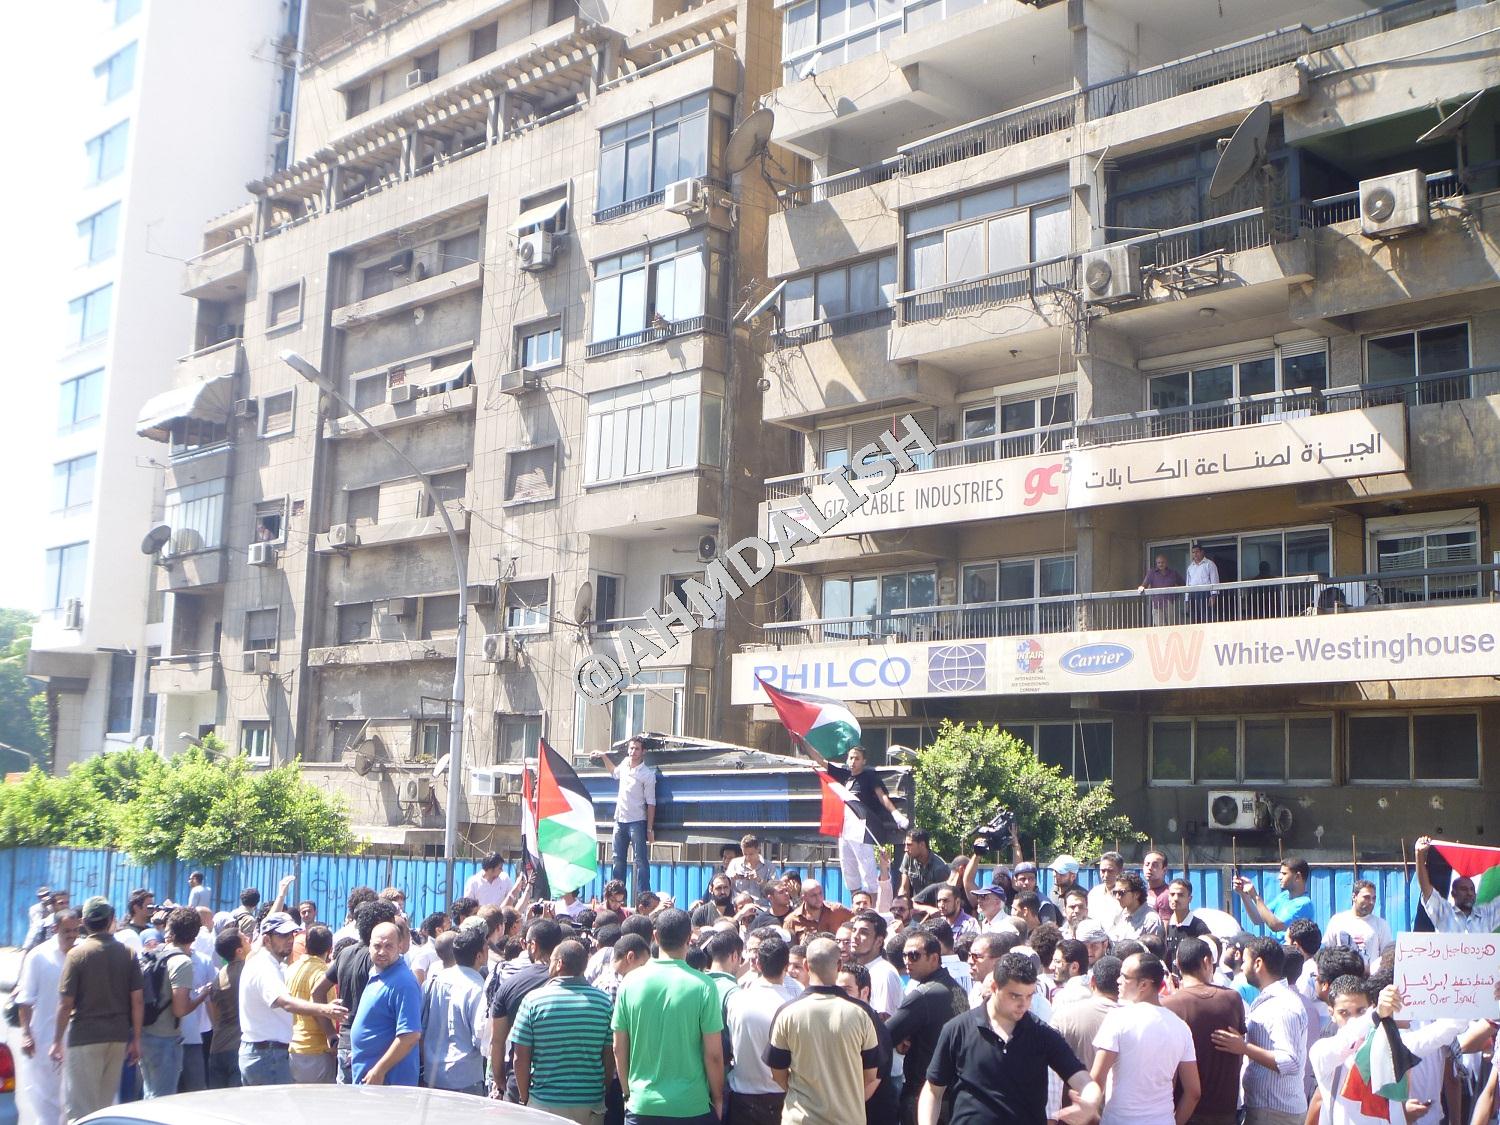 ثورة مصر ميلاد فيديو لهتافات المظاهرة أمام السفارة الاسرائيلية اليوم